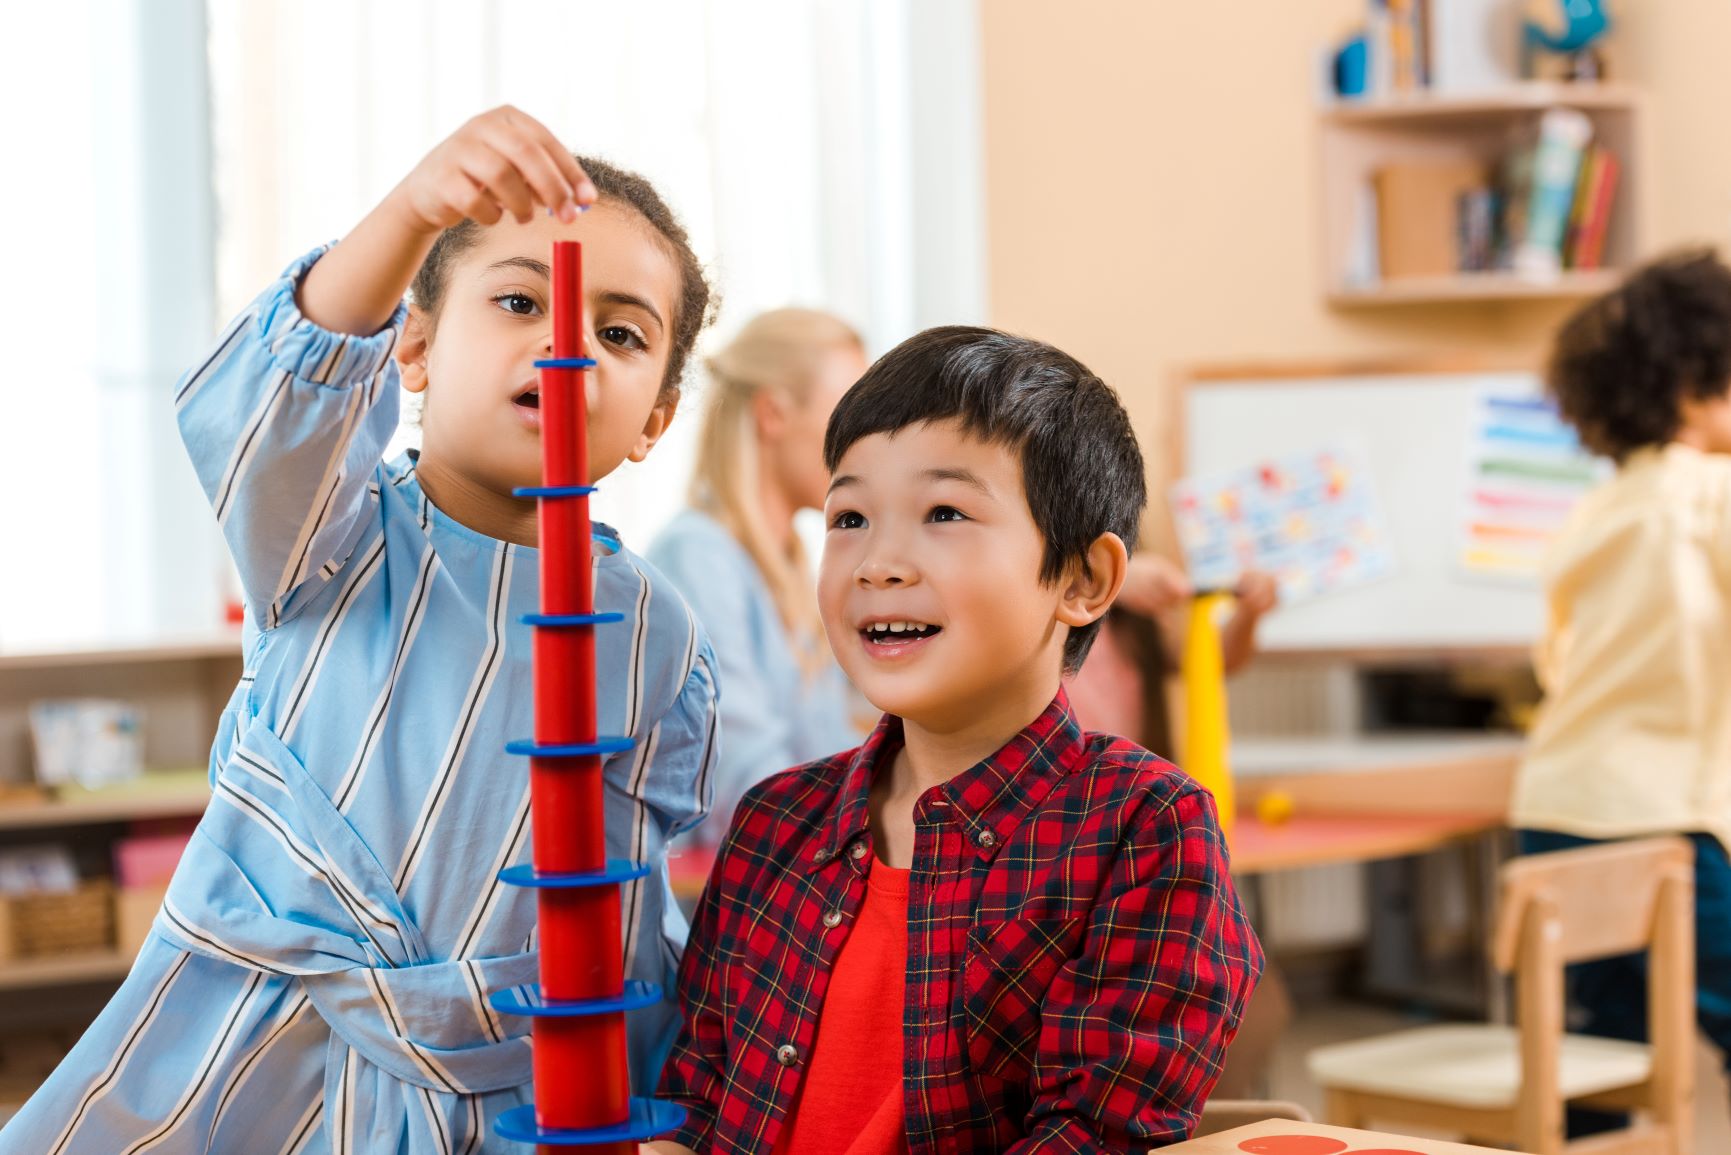 Montessori: Cuando los niños empiezan después de 6 años - Escuela Viva